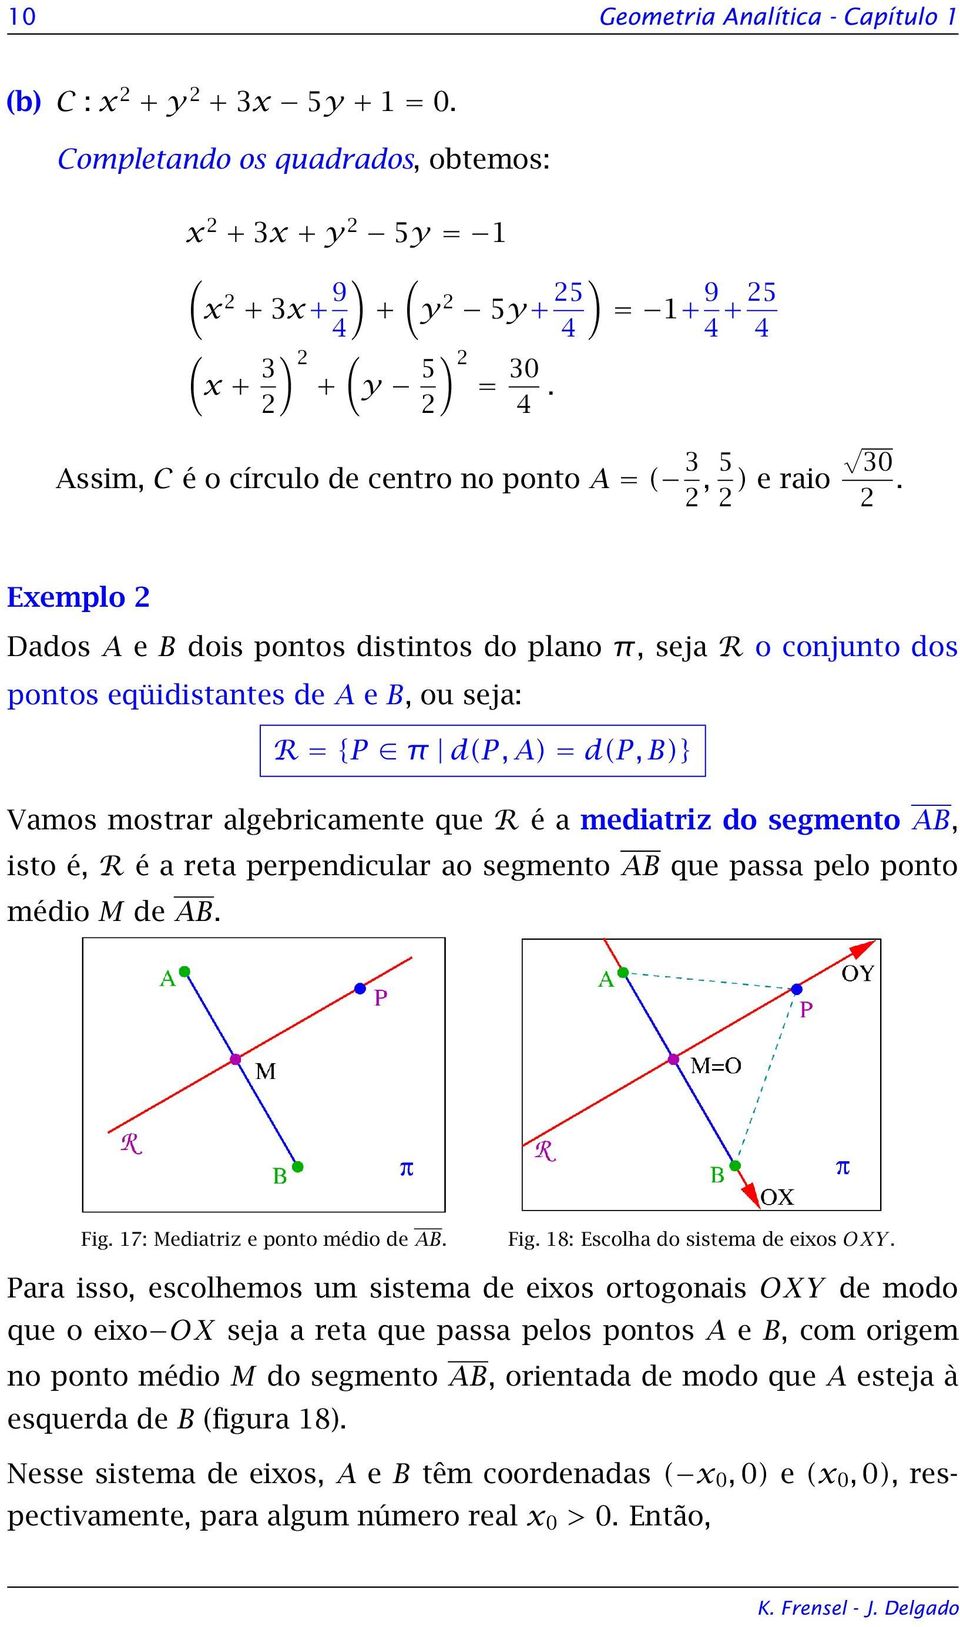 Exemplo Dados A e B dois pontos distintos do plano π, seja R o conjunto dos pontos eqüidistantes de A e B, ou seja: R = {P π d(p, A) = d(p, B)} Vamos mostrar algebricamente que R é a mediatriz do